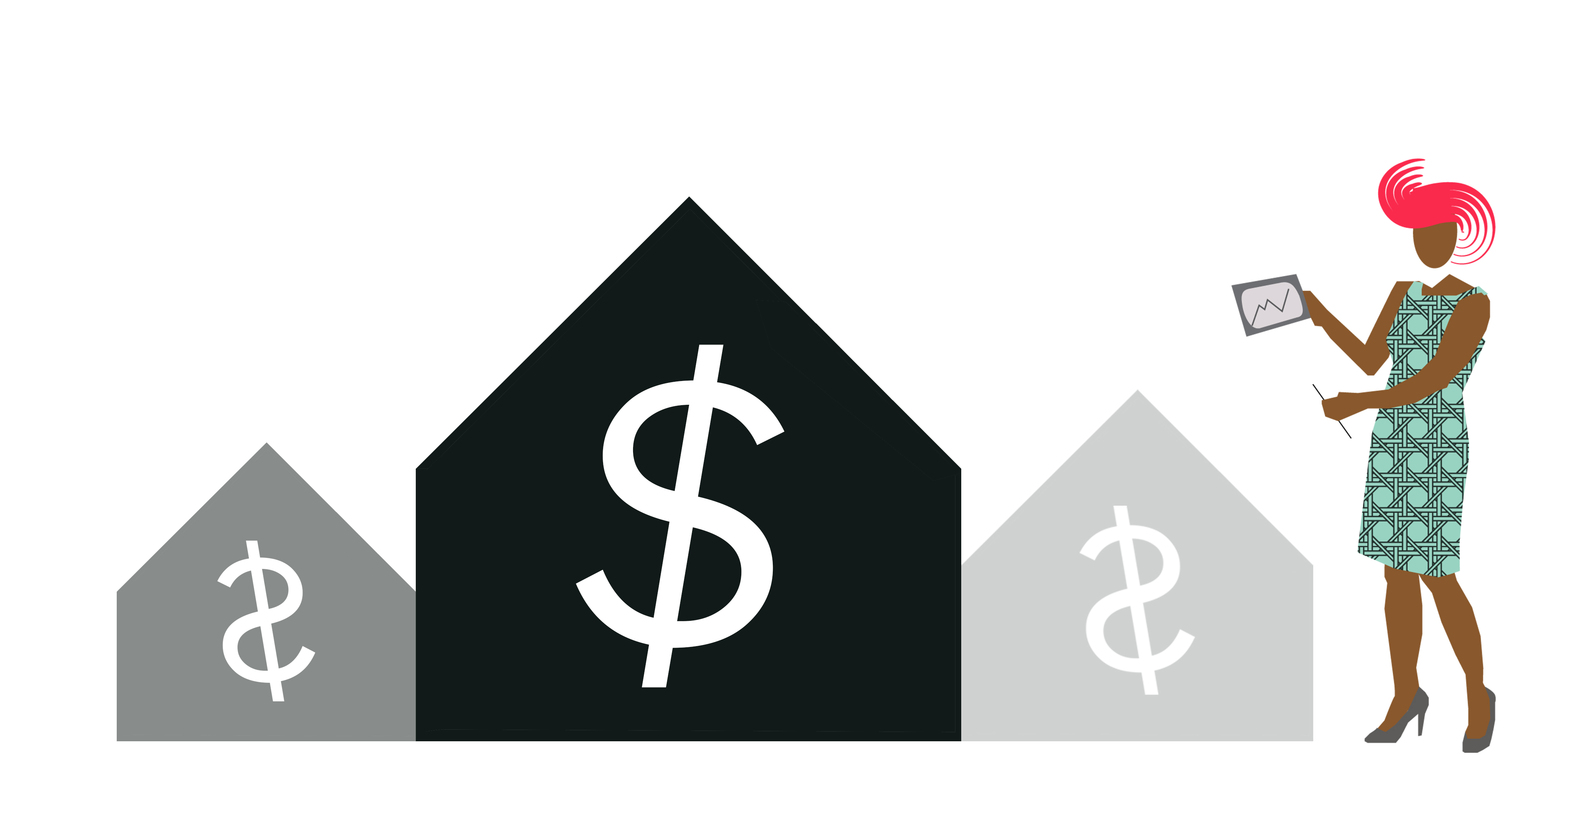 hình ảnh minh họa cho các khoản thuế phí phải chi cho một ngôi nhà, căn hộ